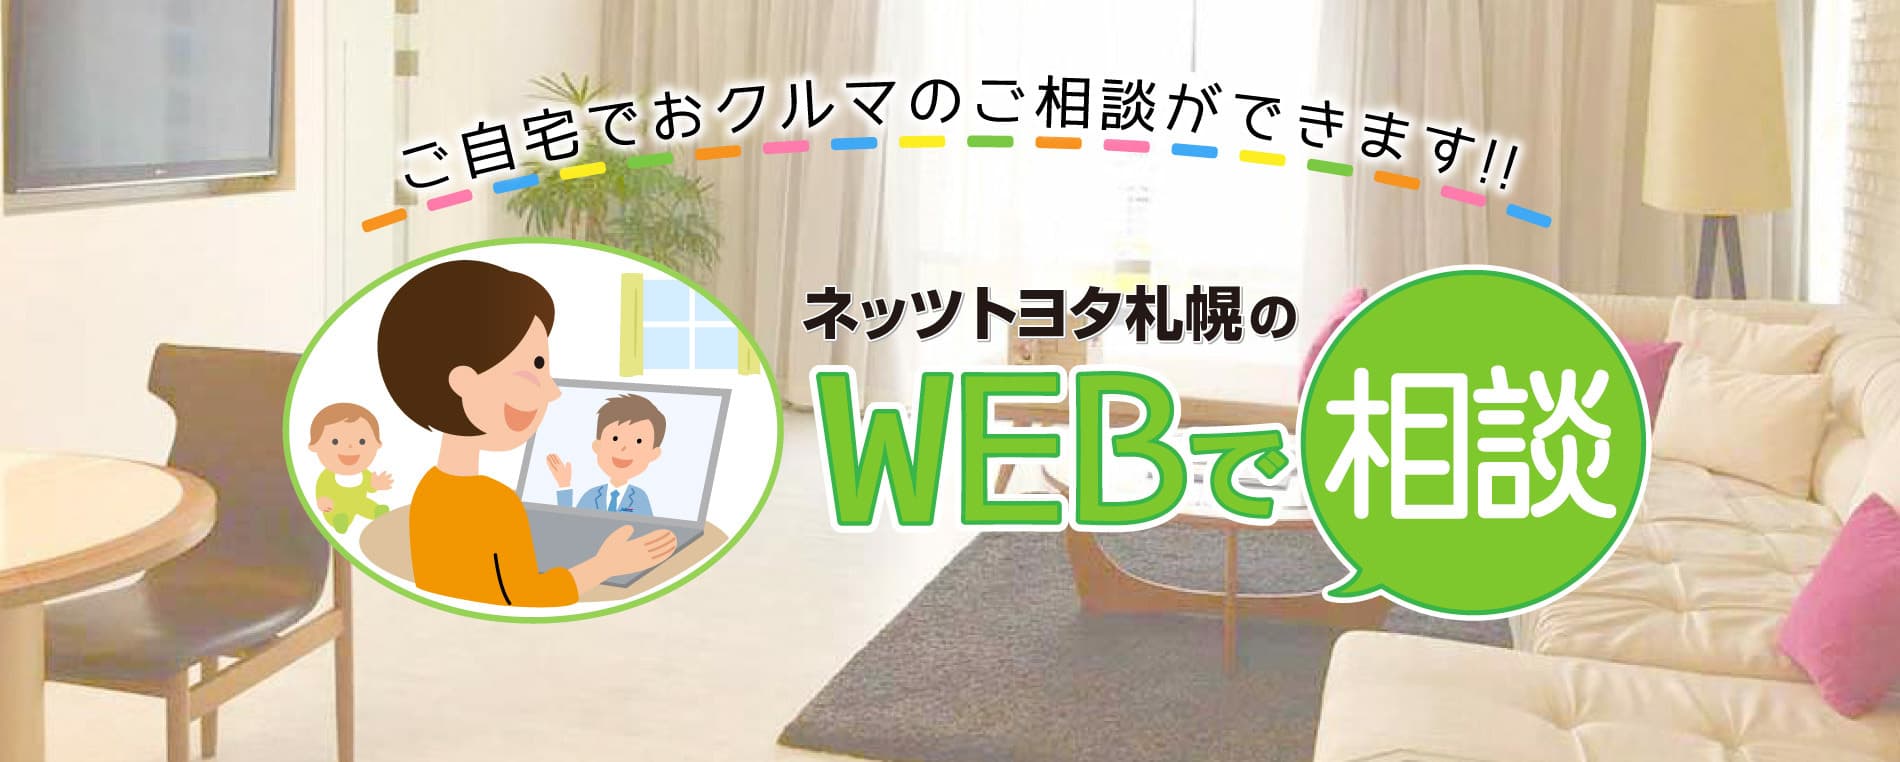 ご自宅でおクルマのご相談ができます！ネッツトヨタ札幌のWEBで相談